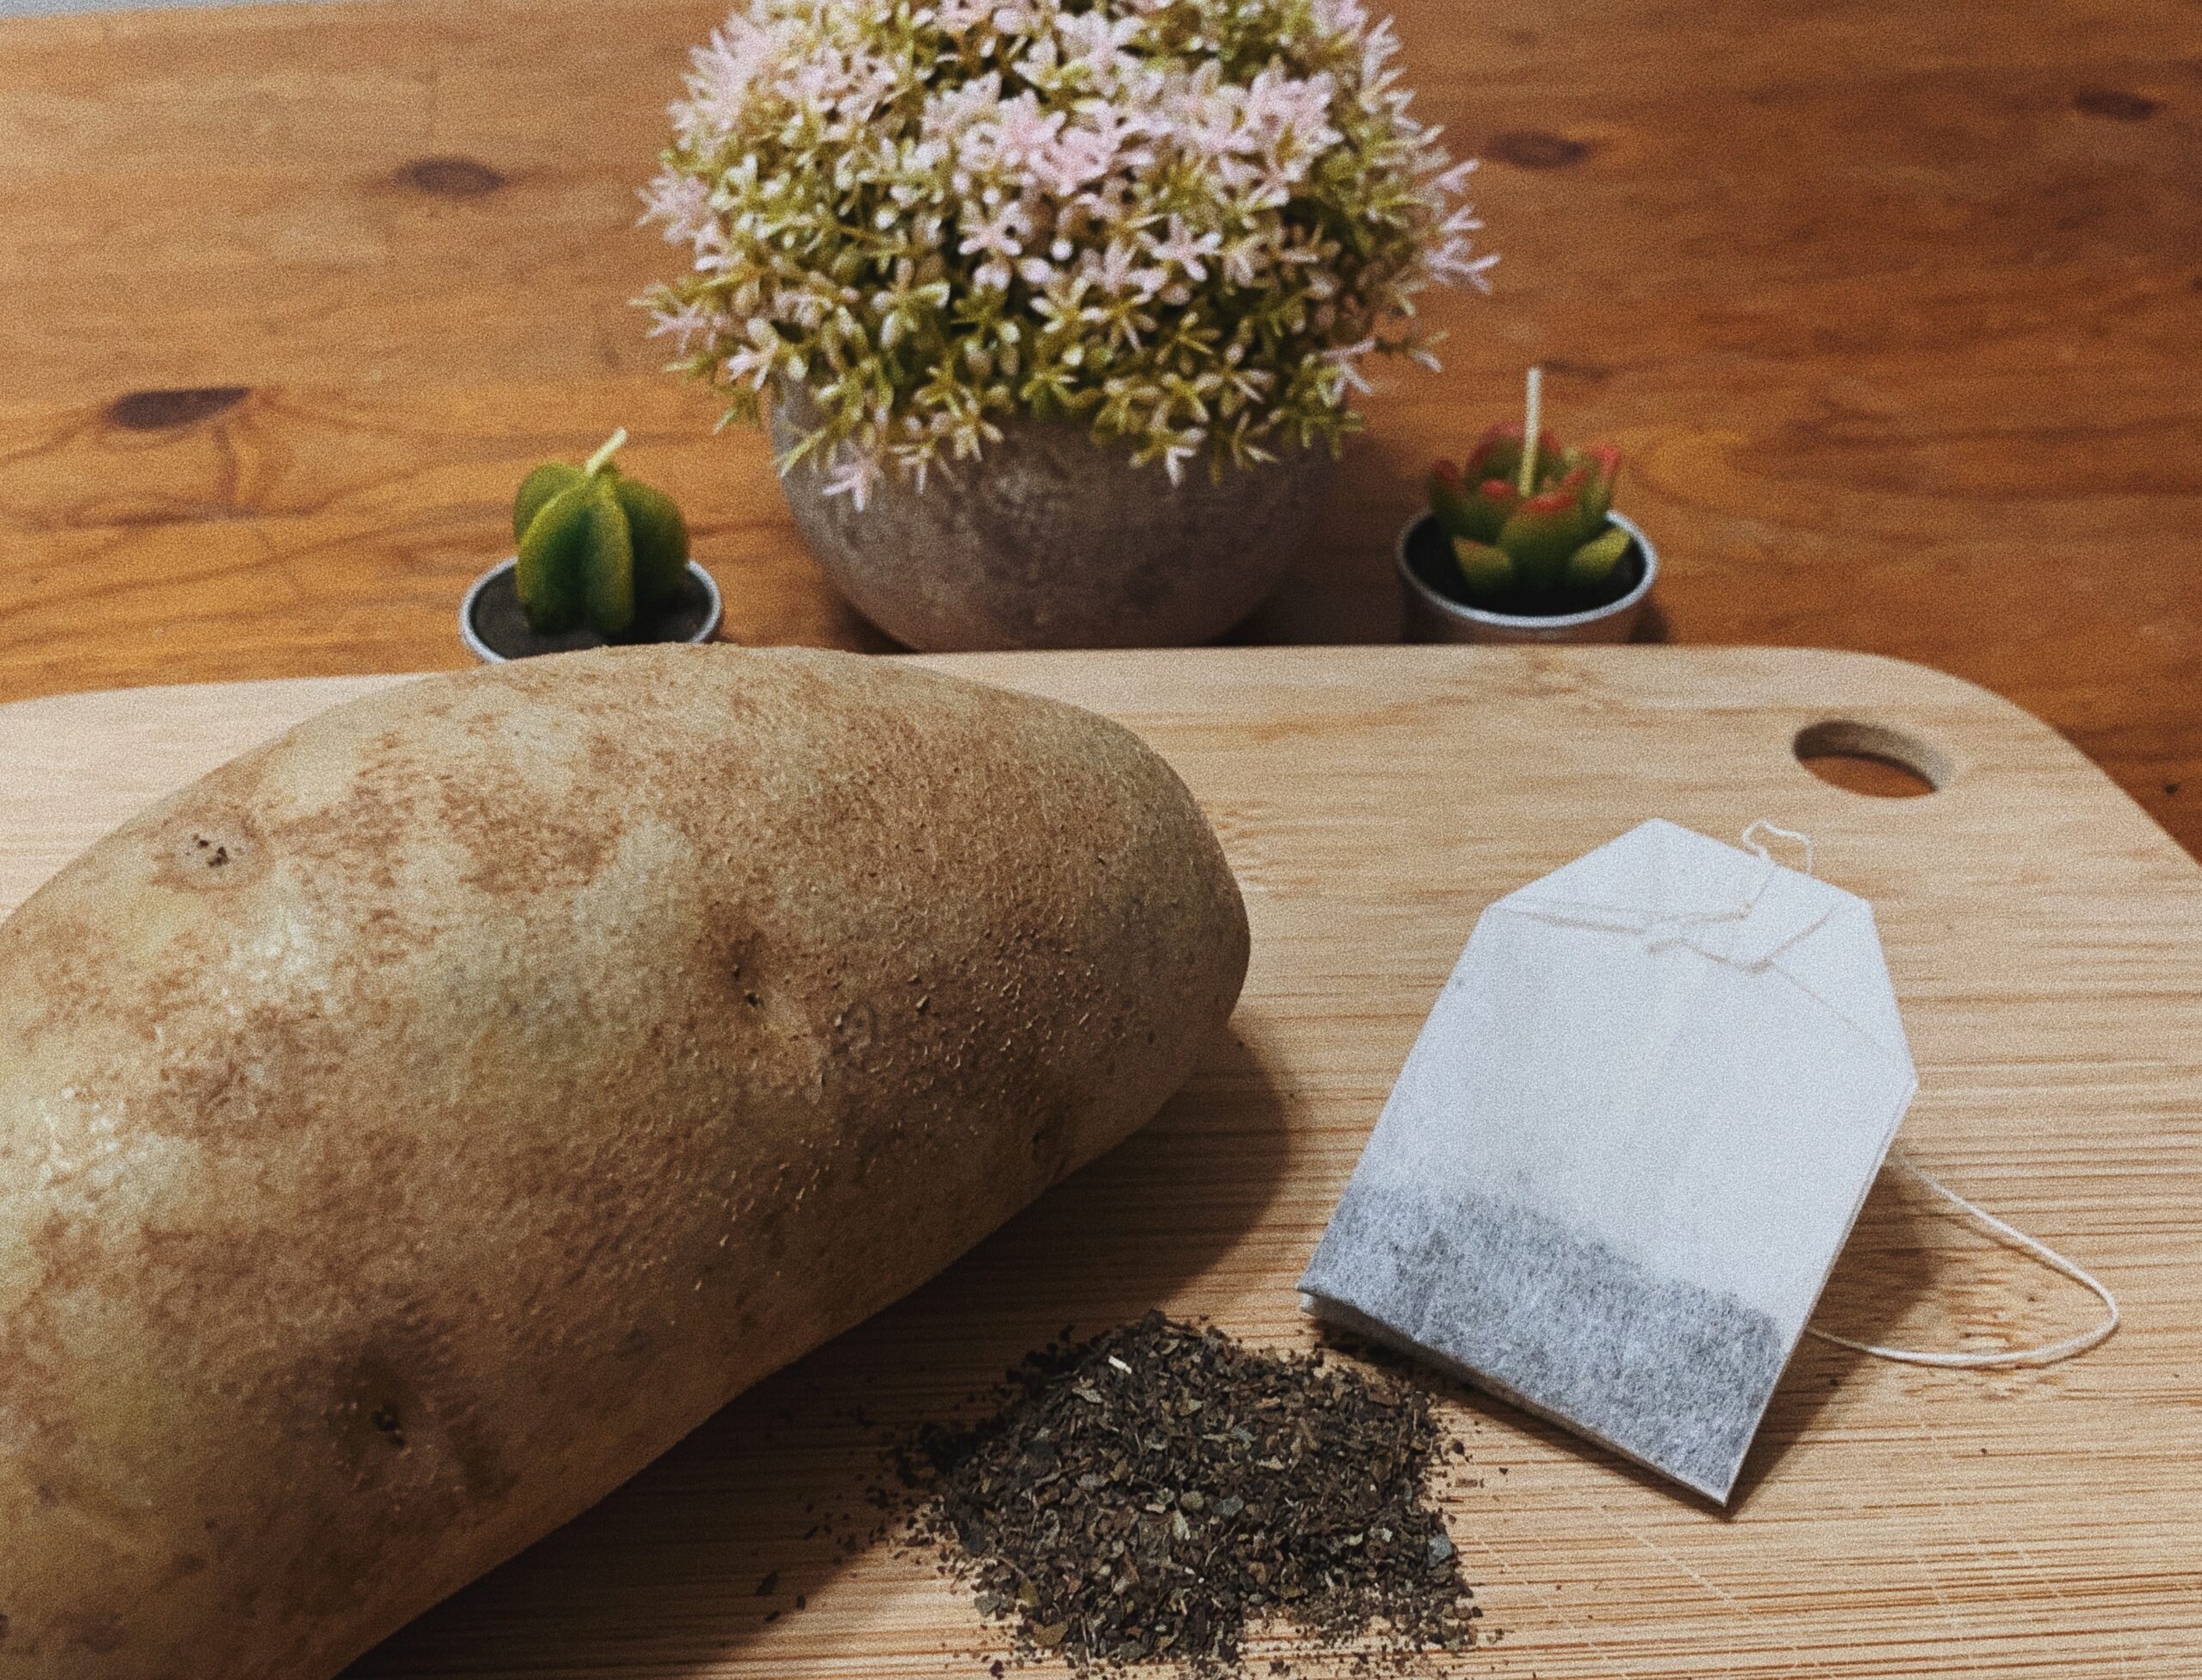 A natural skincare treatment featuring a potato and tea bag.